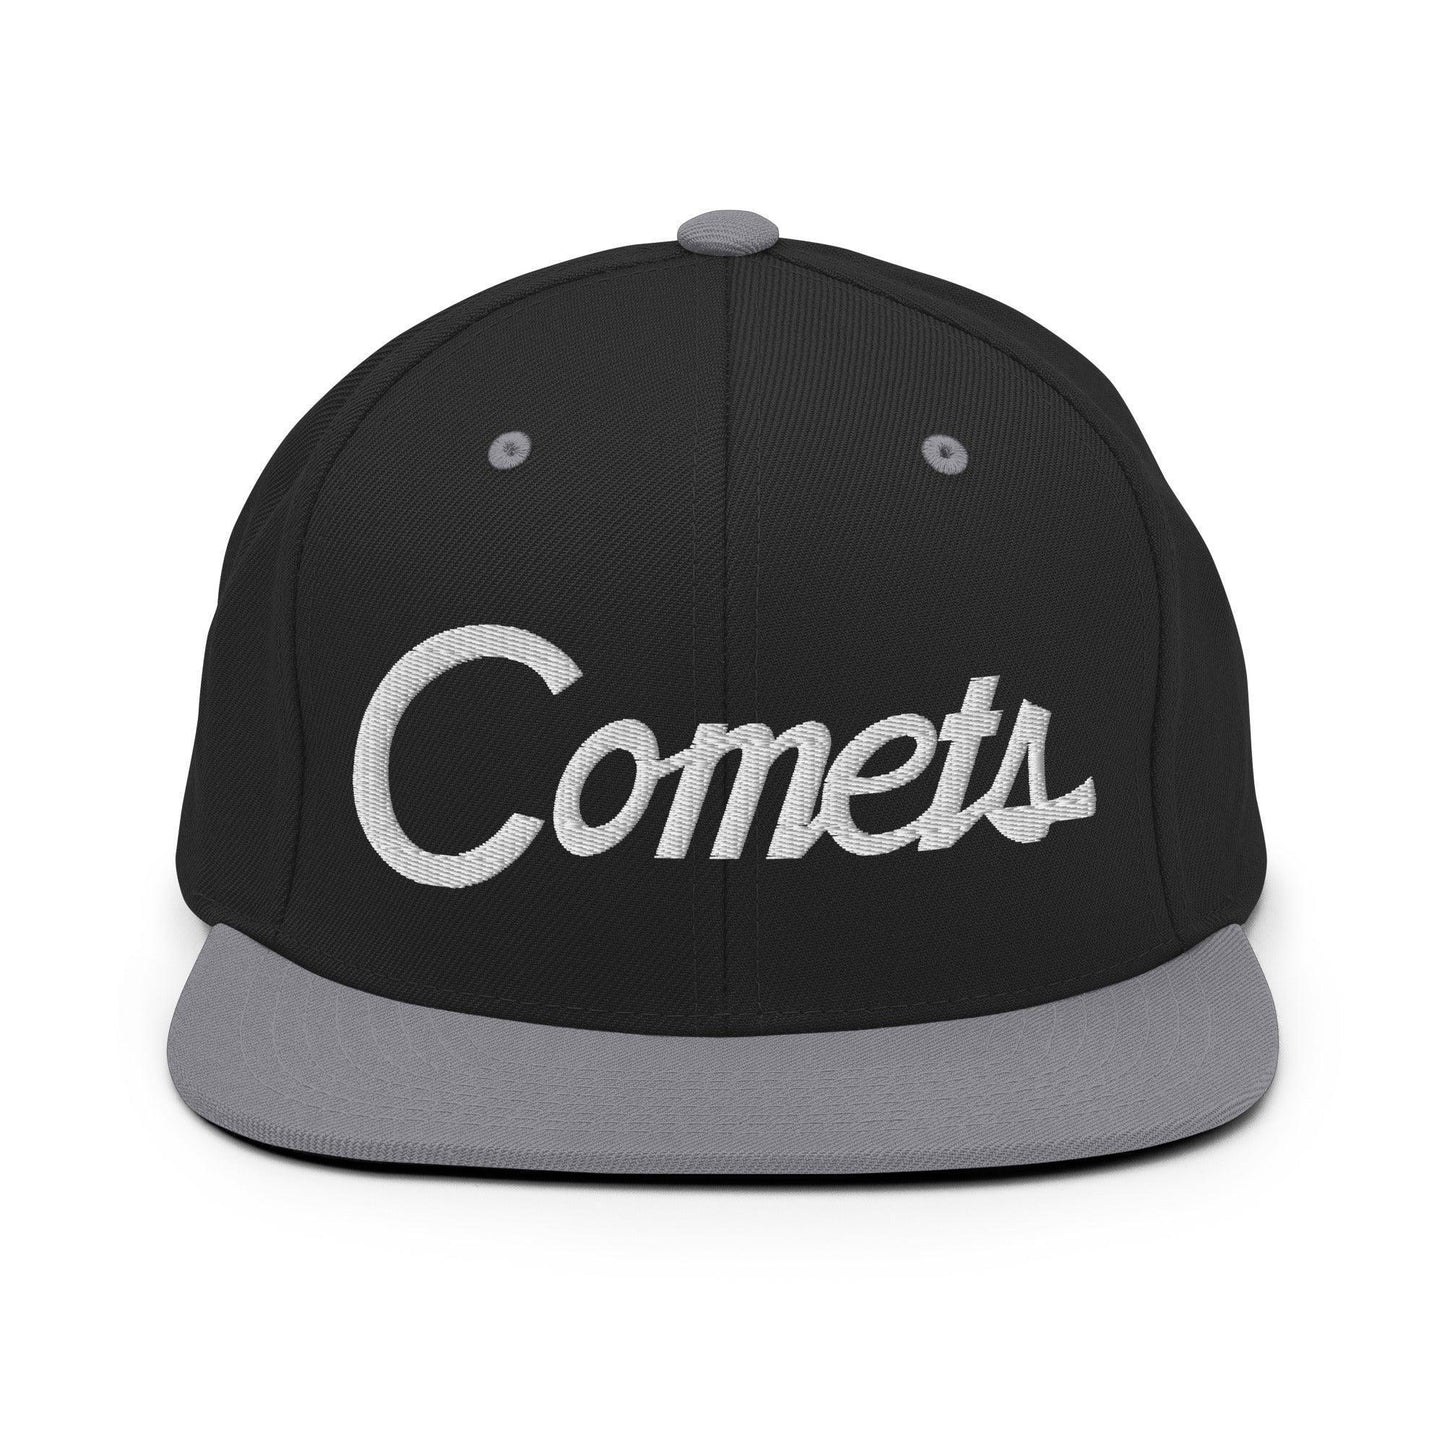 Comets School Mascot Script Snapback Hat Black Silver